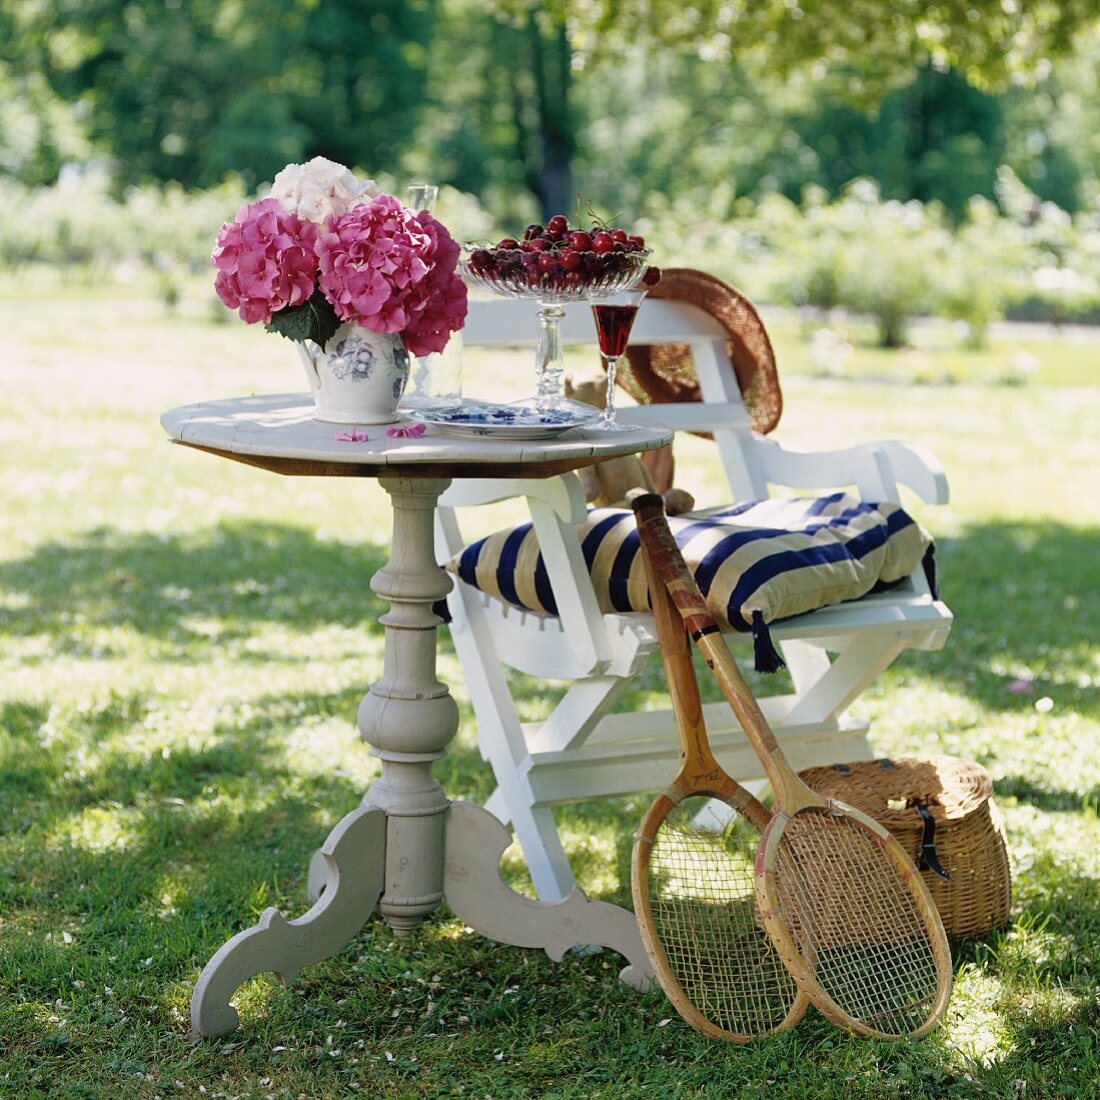 Runder Holztisch mit Kirschen und Hortensien, Tennisschläger an Stuhl gelehnt im sonnigen Garten